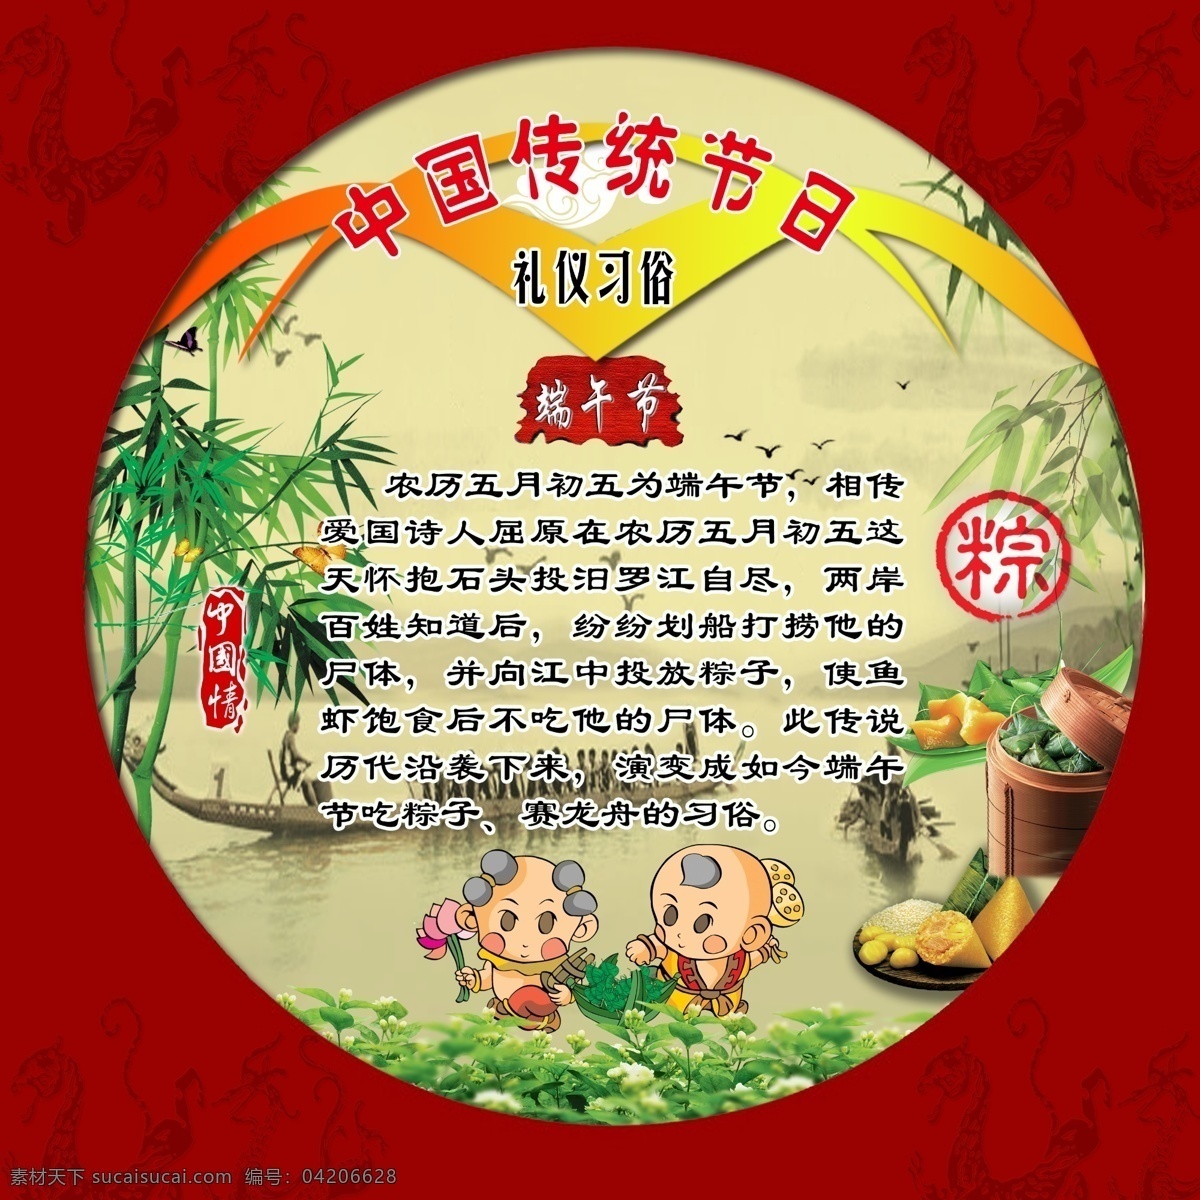 中国 传统节日 礼仪 习俗 端午 中国传统节日 礼仪习俗 红色